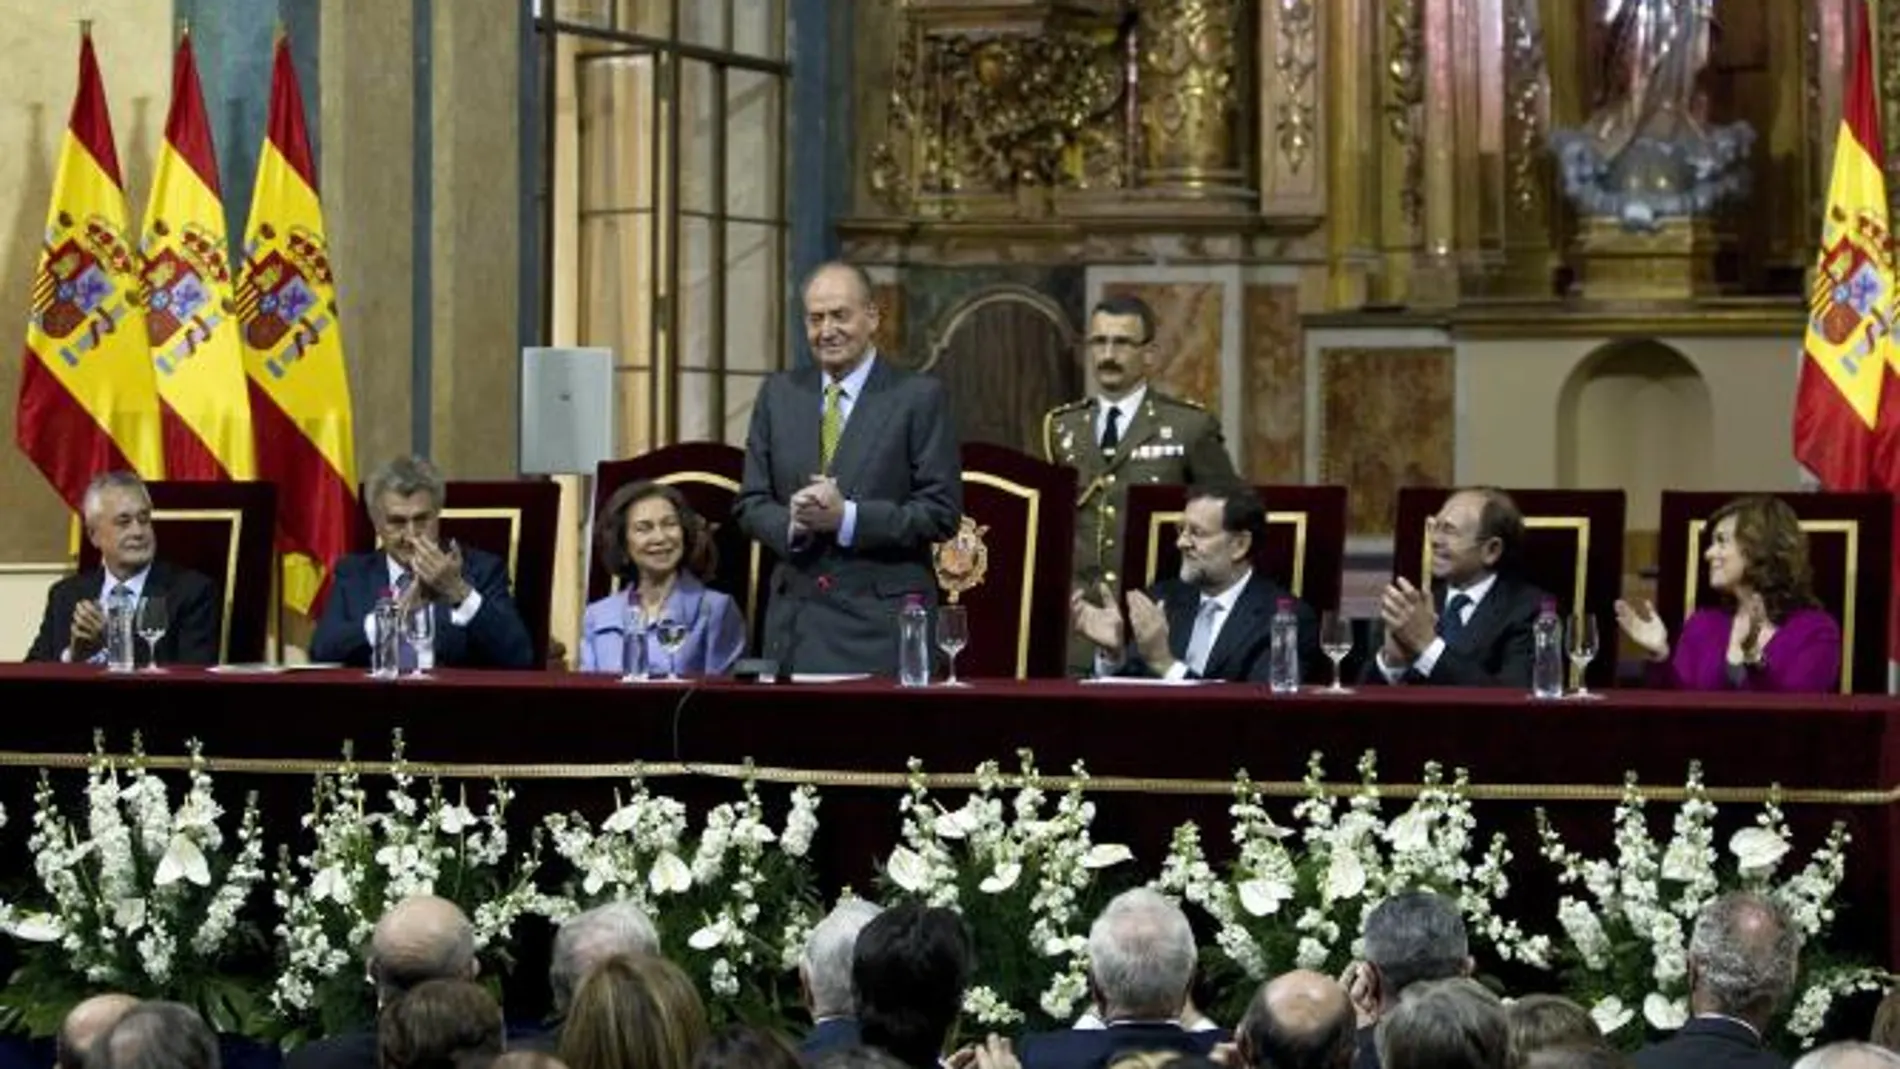 El Rey y Rajoy llaman a revivir la unidad y valentía de 1812 frente a crisis